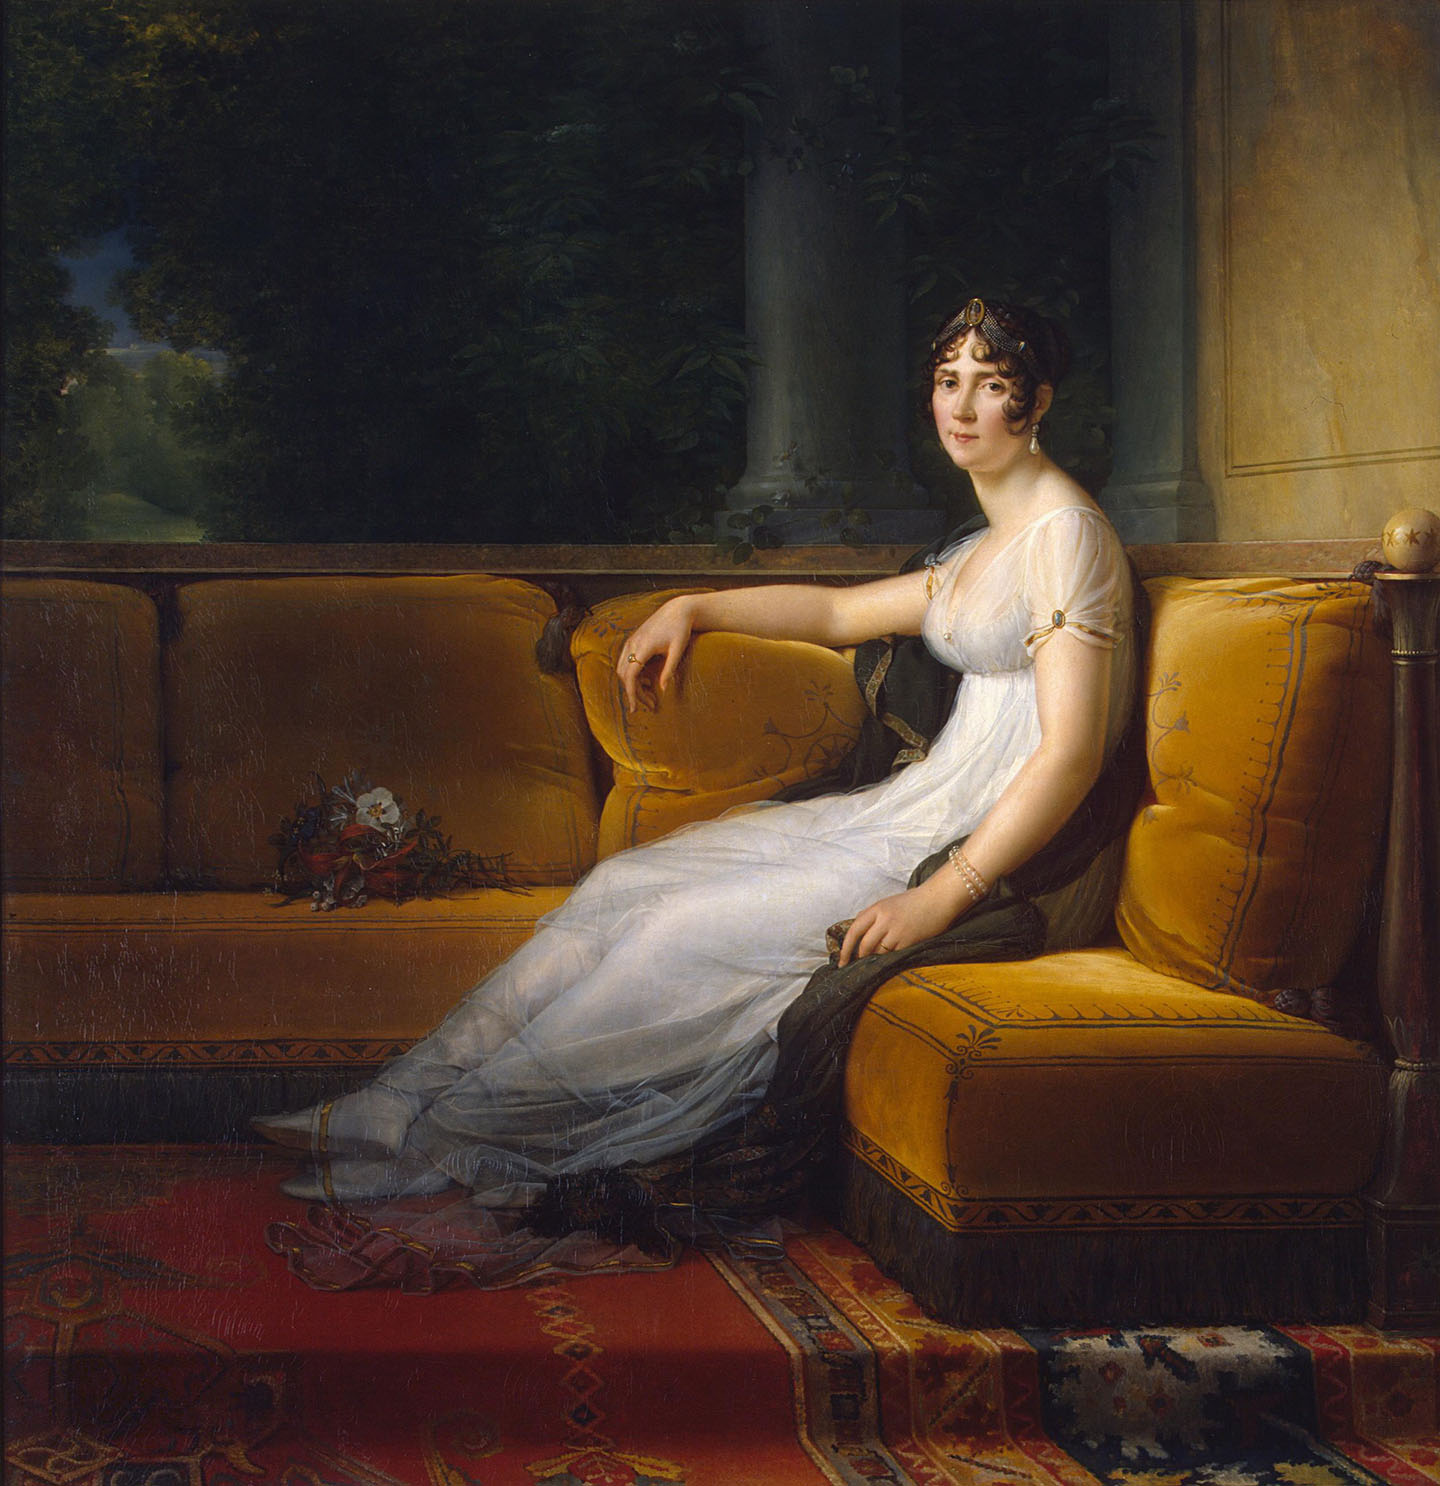 Bức chân dung của hoàng hậu Joséphine, vợ vua Napoleon, do họa sĩ François Gérard thực hiện, năm 1801. Tranh sơn dầu trên vải canvas. Bảo tàng Hermitage, thành phố Saint Petersburg, nước Nga. (Ảnh: Tài liệu công cộng)